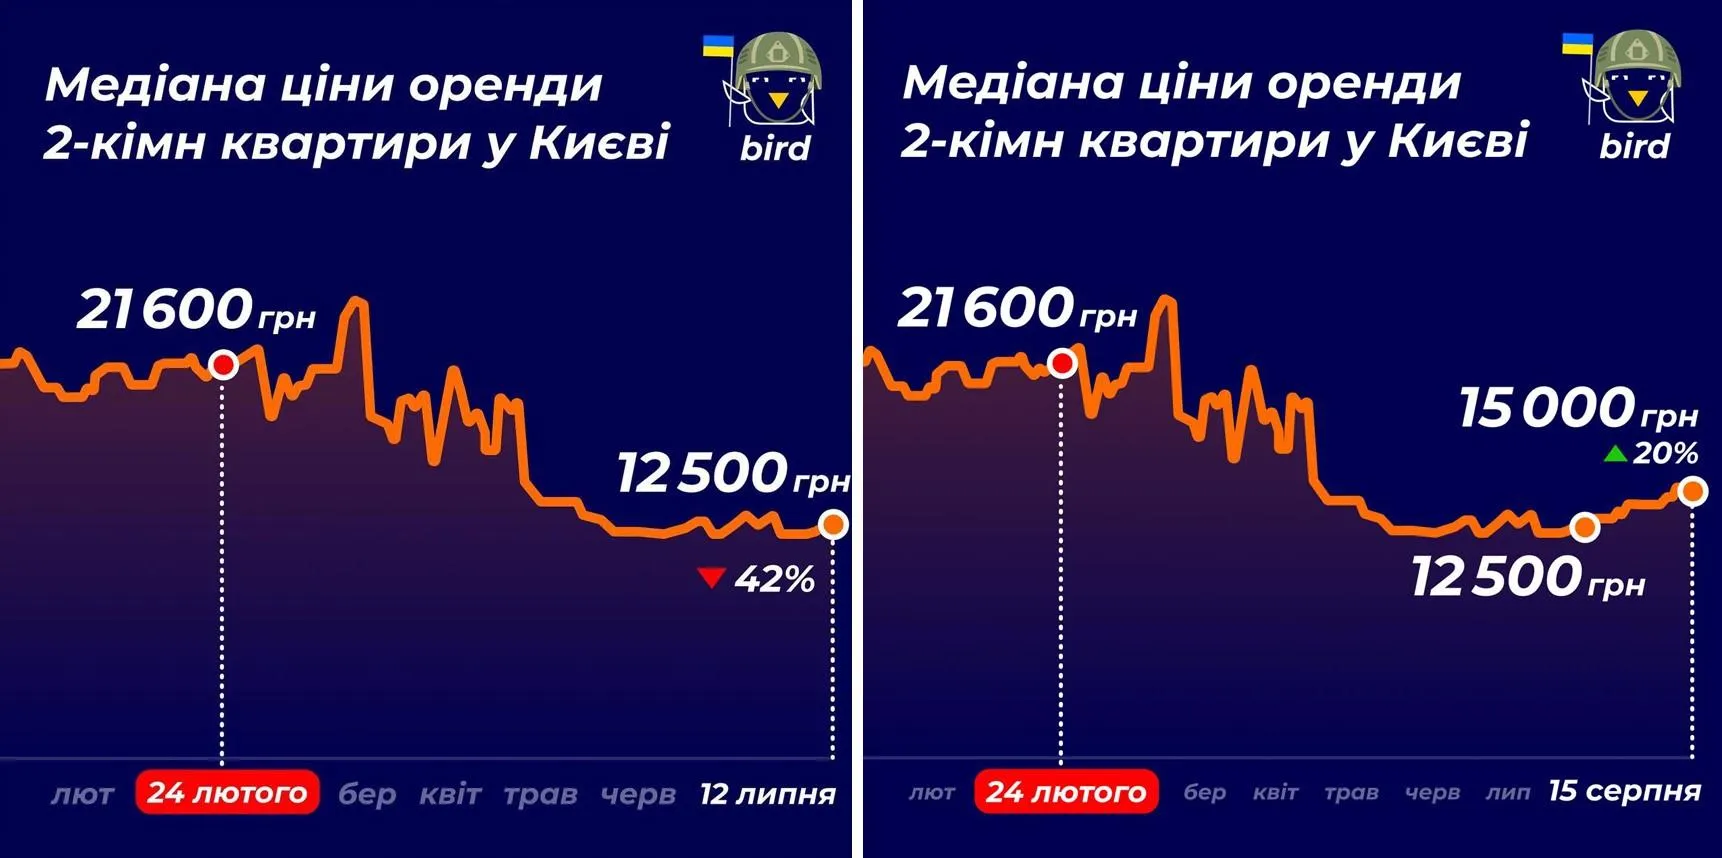 Цена двухкомнатных квартир в Киеве